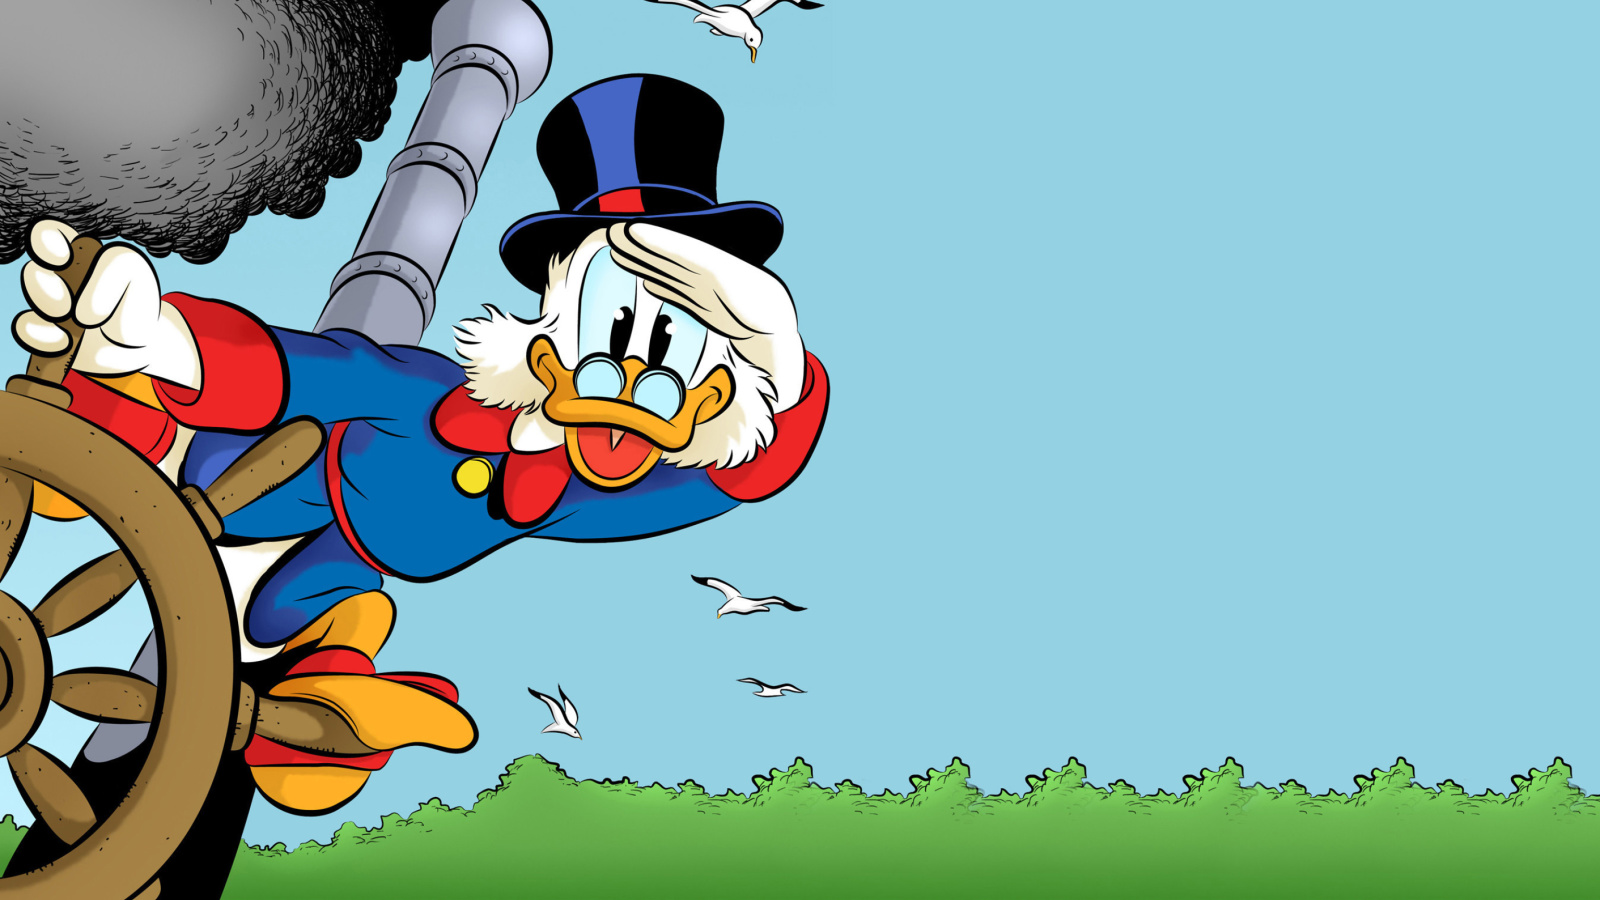 Scrooge McDuck from Ducktales wallpaper 1600x900